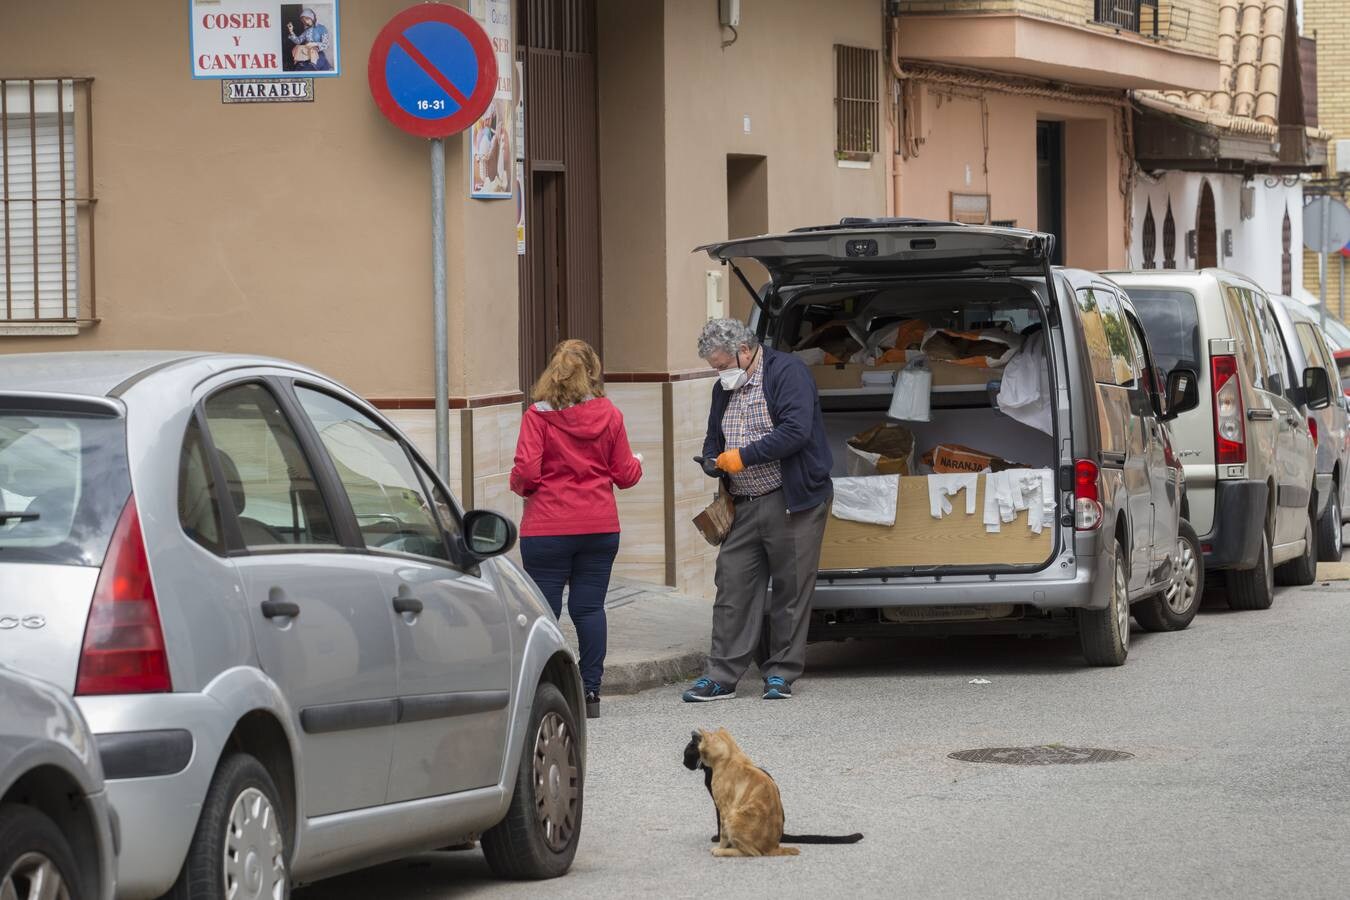 Coronavirus en Sevilla: así se vive en Valdezorras el confinamiento